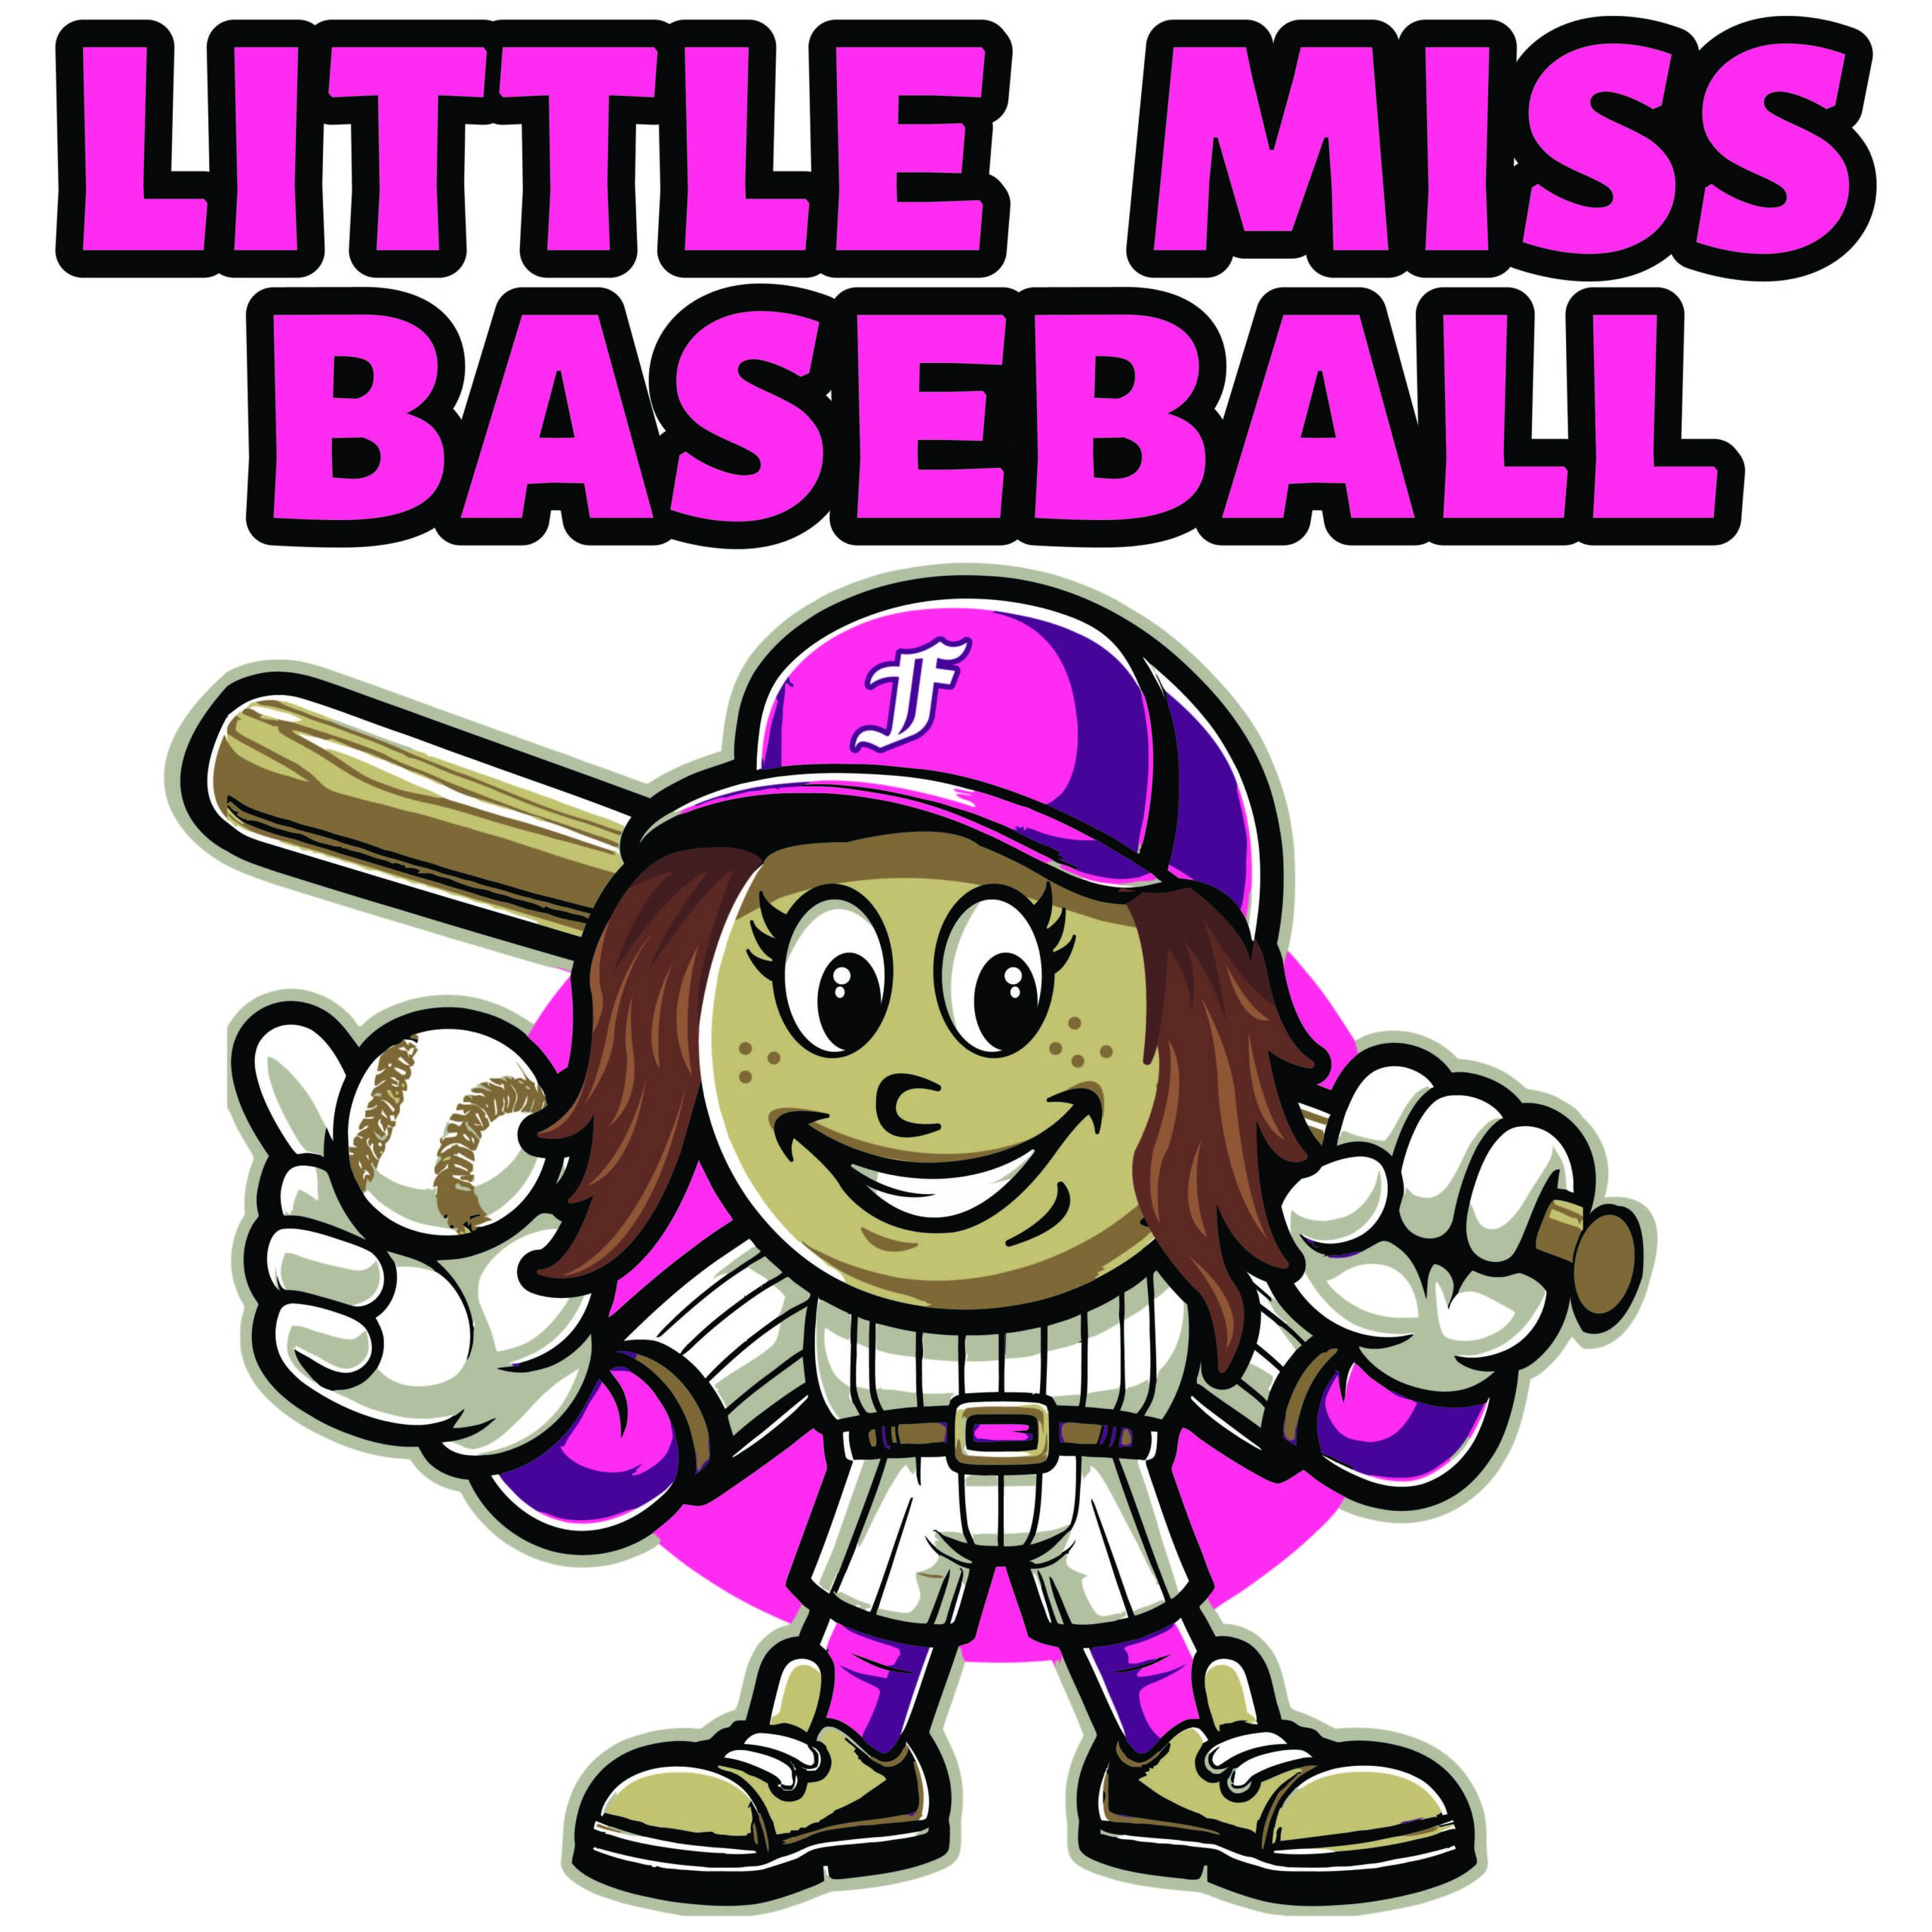 3. Alternate Baseball Girl Logo